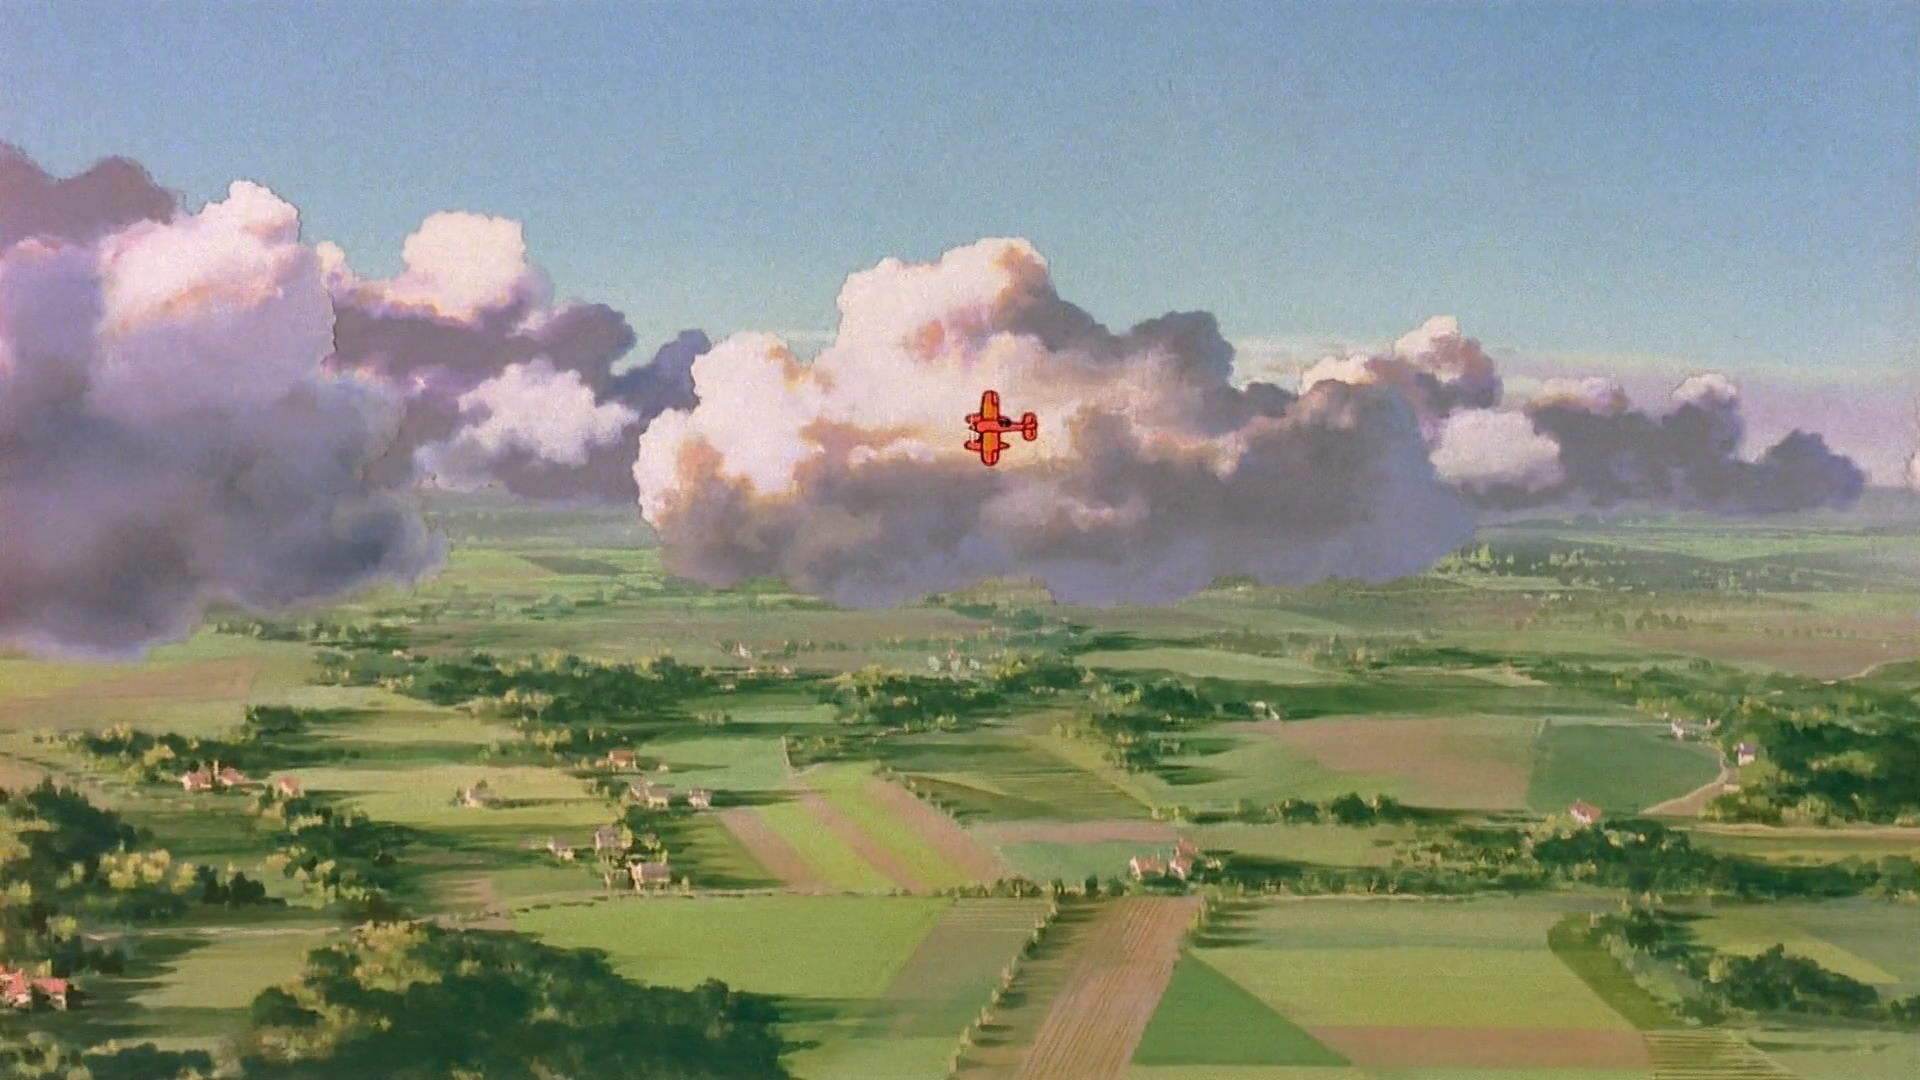 《红猪》,在那个特别浪漫的时代,和红猪一起翱翔天空吧,我们的征途是